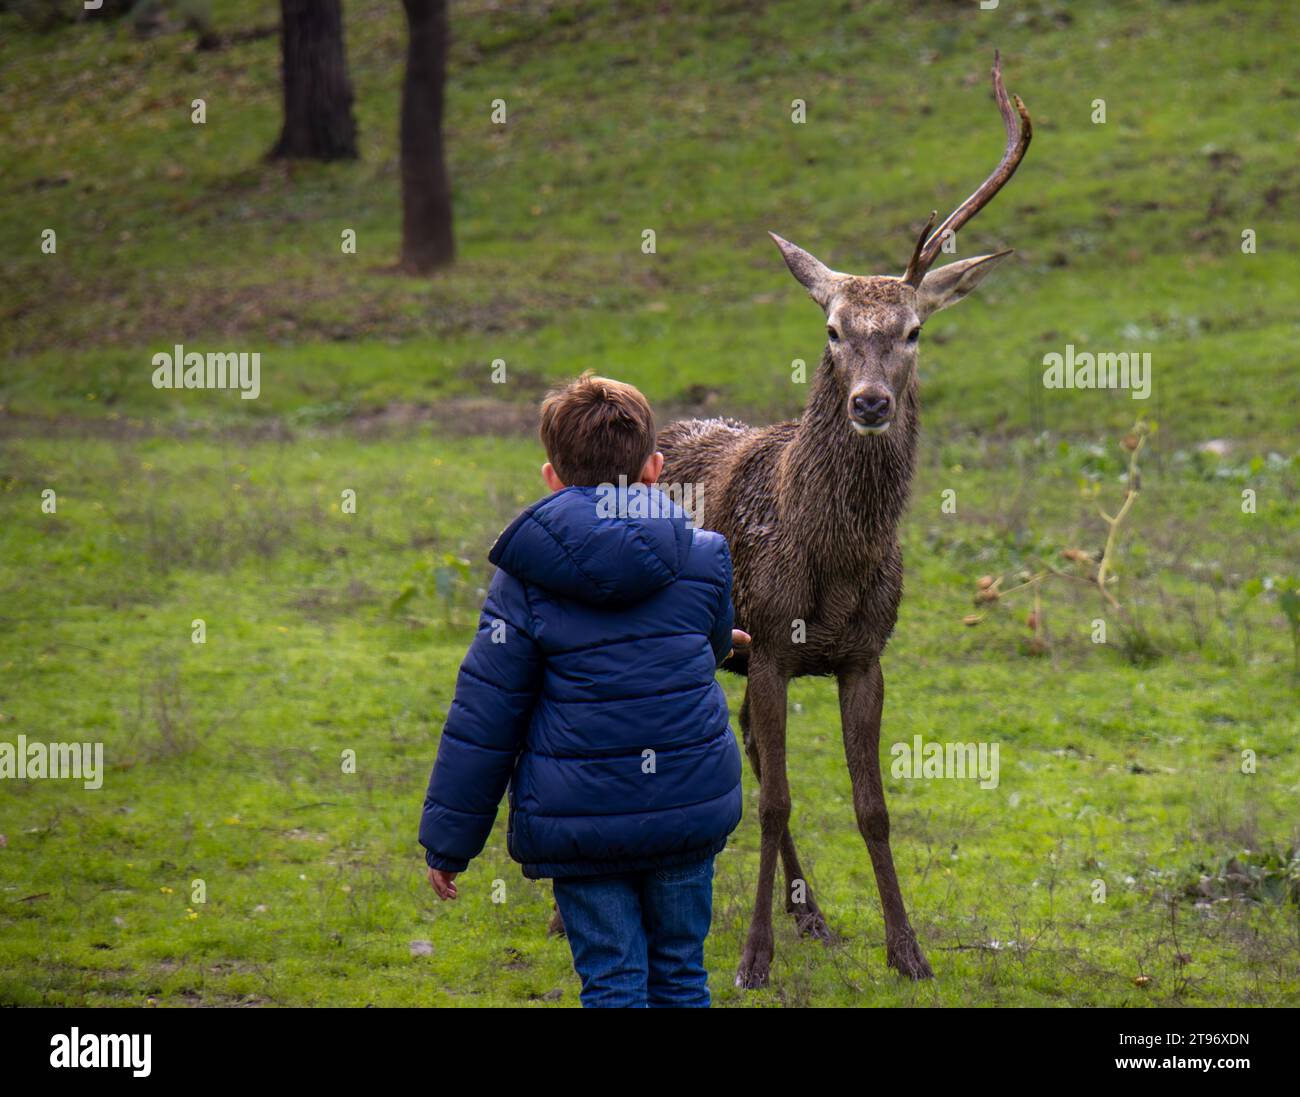 Ciervo macho con una sola asta muy cerca de un niño y mirándolo fijamente. Parque Nacional de Monfragüe, Cáceres, España Stock Photo